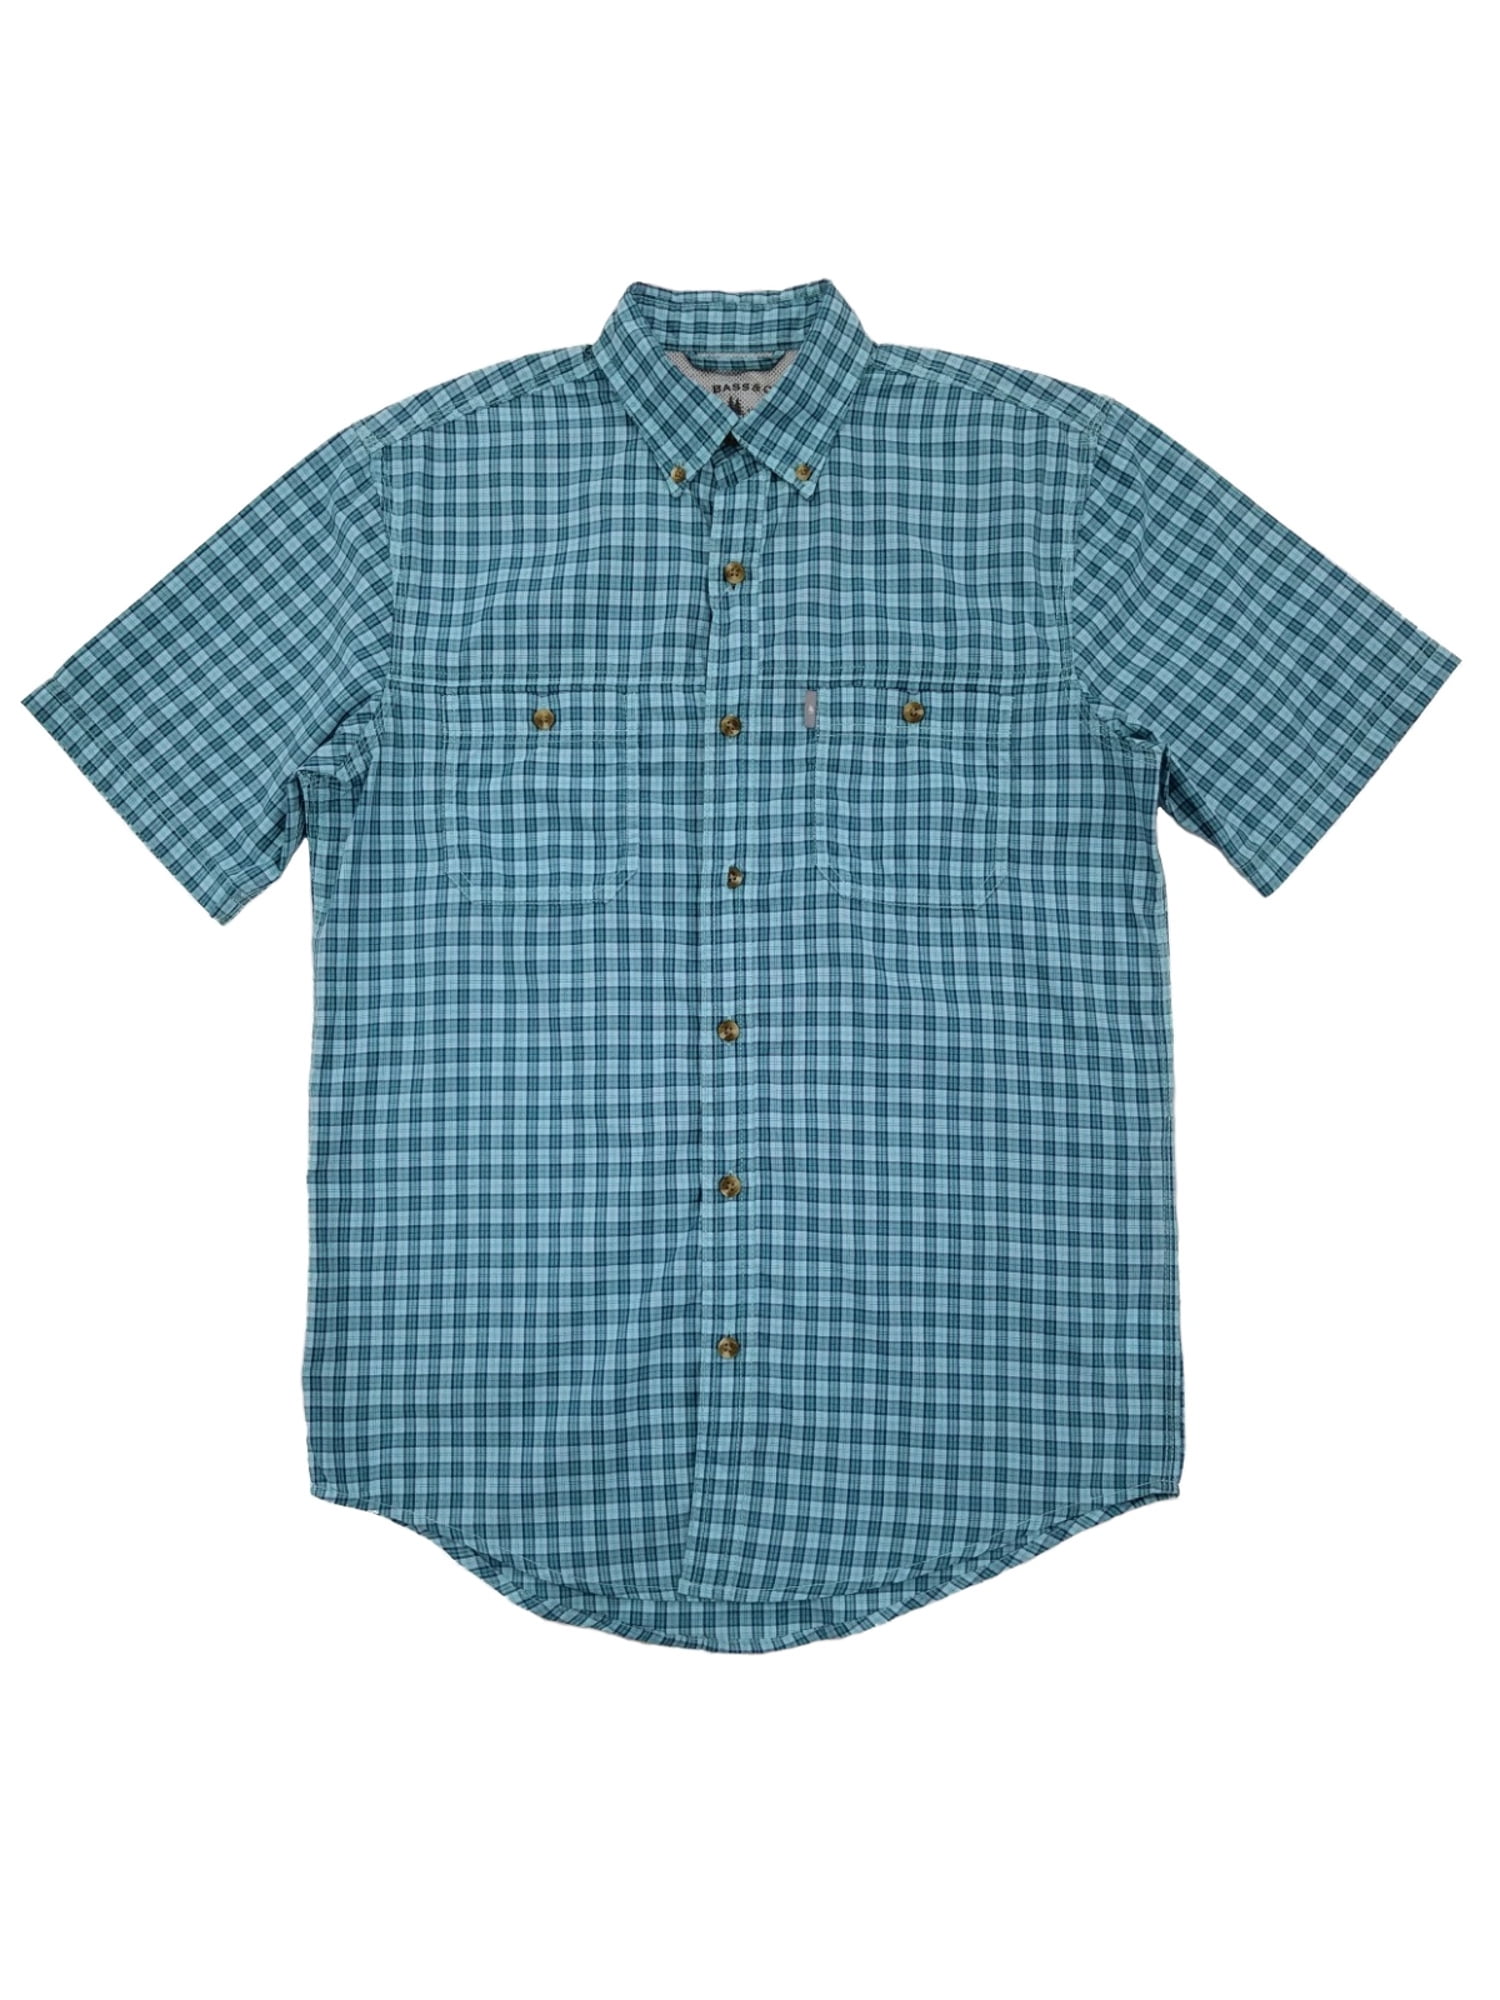 G.H. Bass & Co. Mens Aqua Plaid Short Sleeve Button-Down Shirt S ...